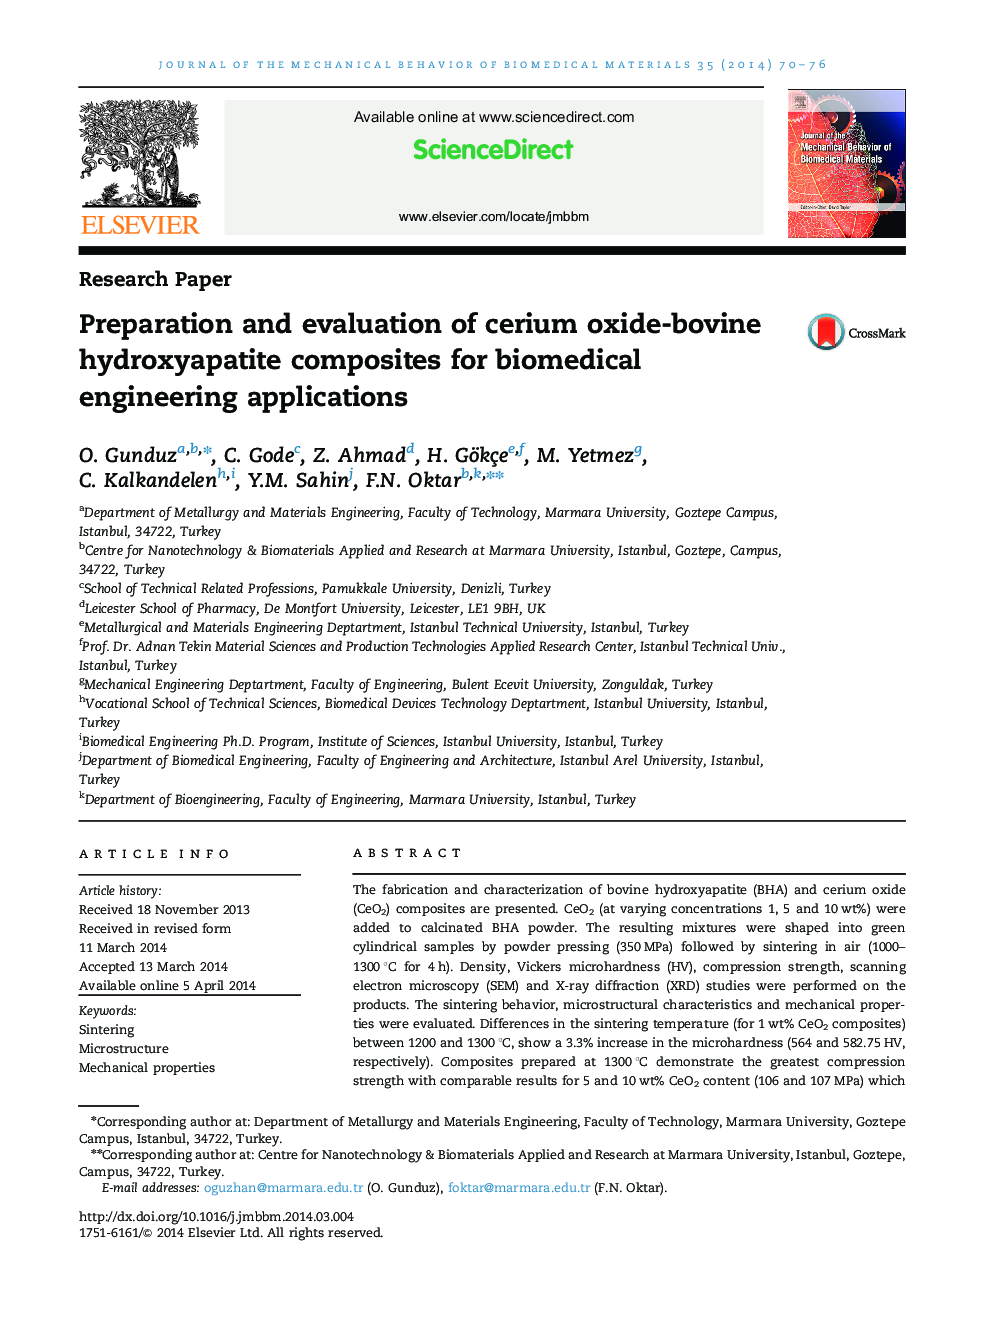 تهیه و ارزیابی کامپوزیت هیدروکسی آپاتیت اکسید سریم برای برنامه های کاربردی مهندسی پزشکی 